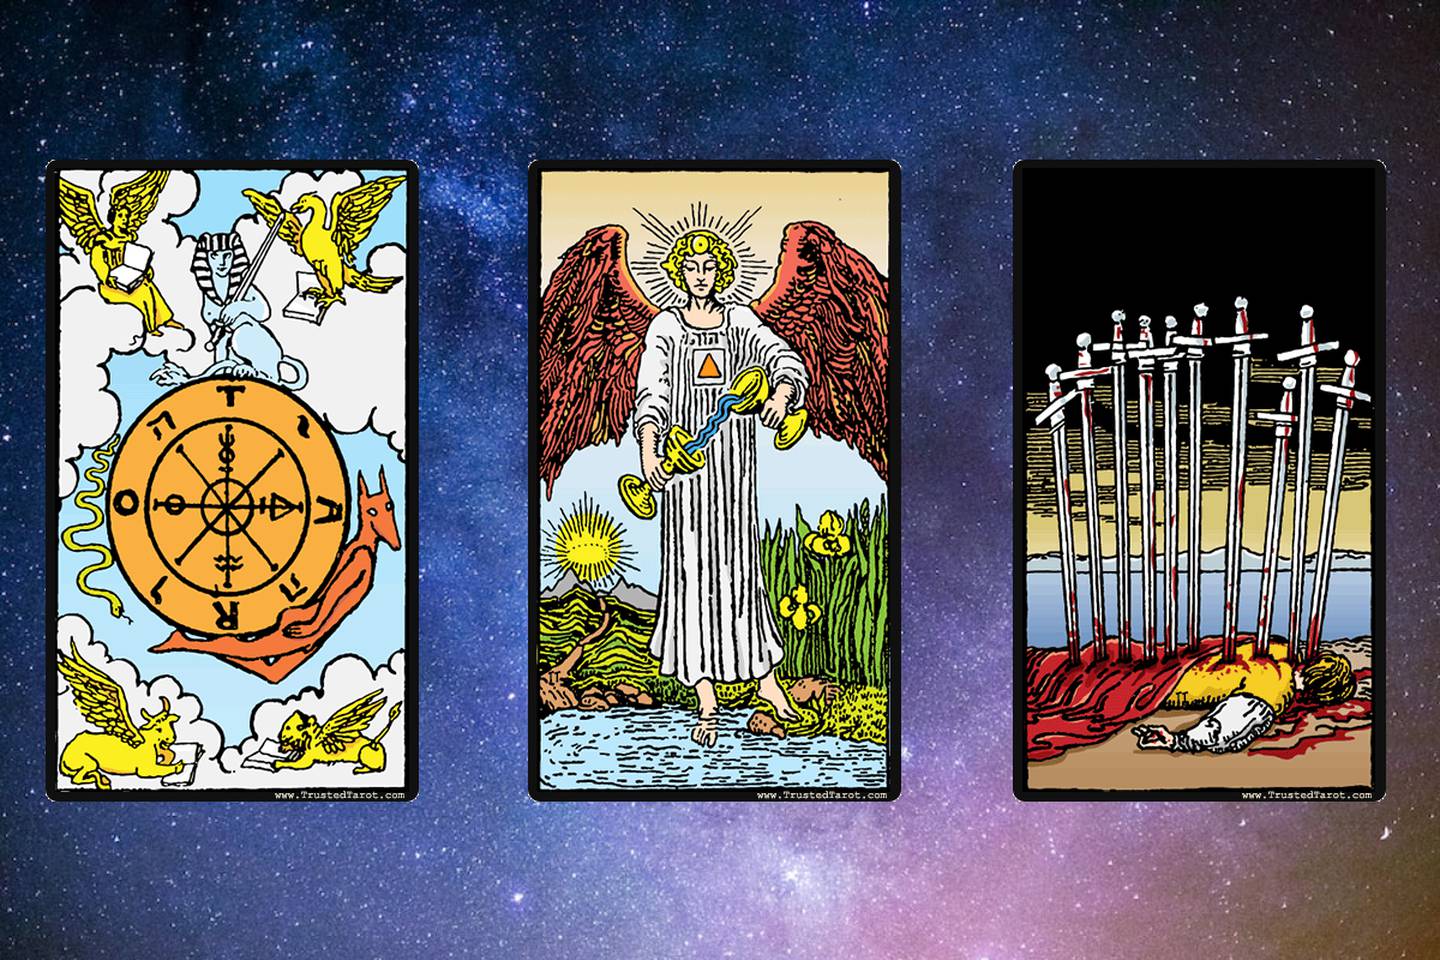 Elige una carta del Tarot: La Rueda de la Fortuna, La Templanza y Diez de Espadas (de izquierda a derecha).